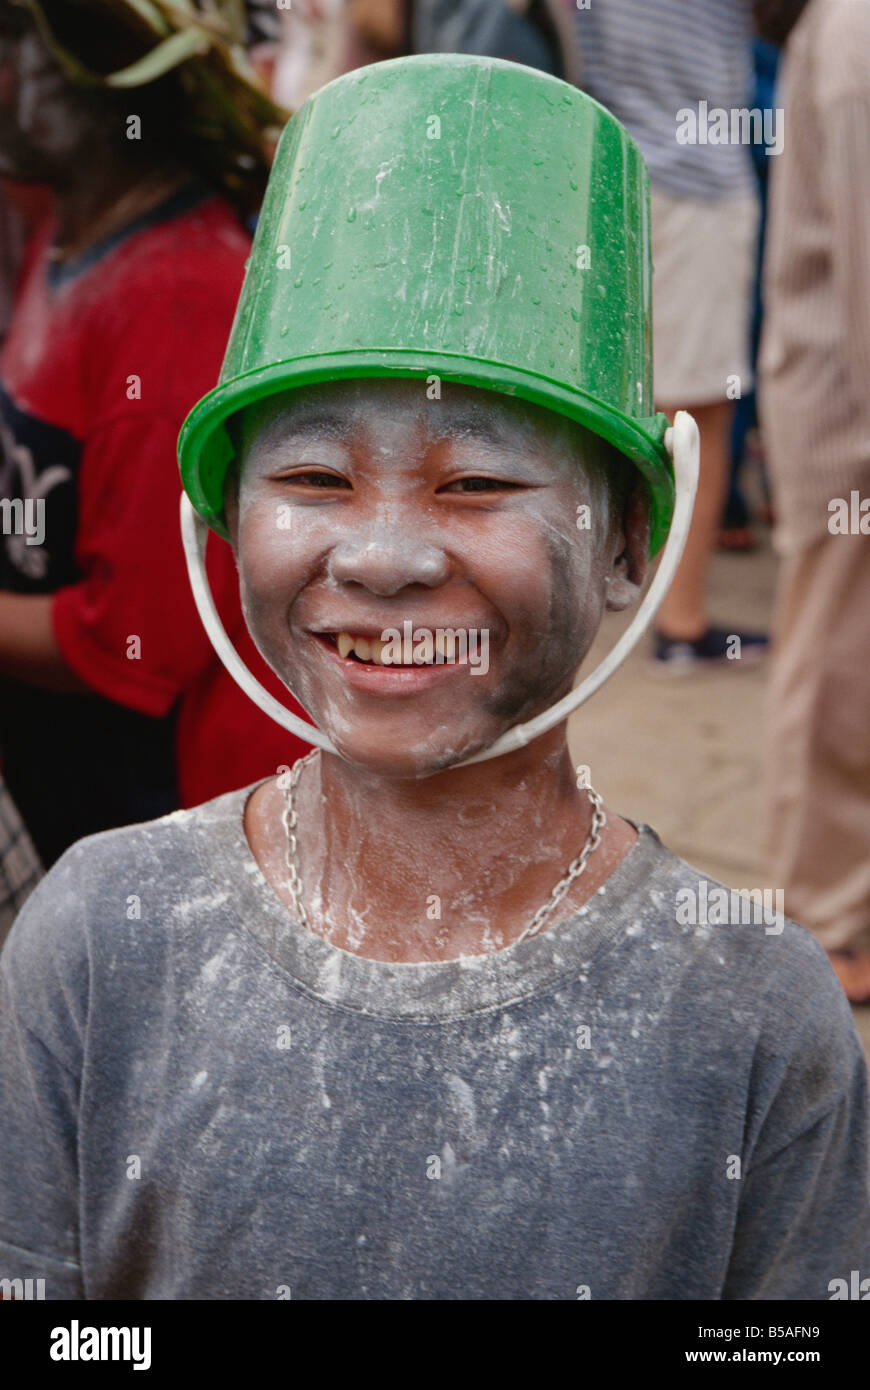 Festival dell'acqua e il Nuovo Anno Pimai Luang Prabang Laos Indocina Asia del sud-est asiatico Foto Stock